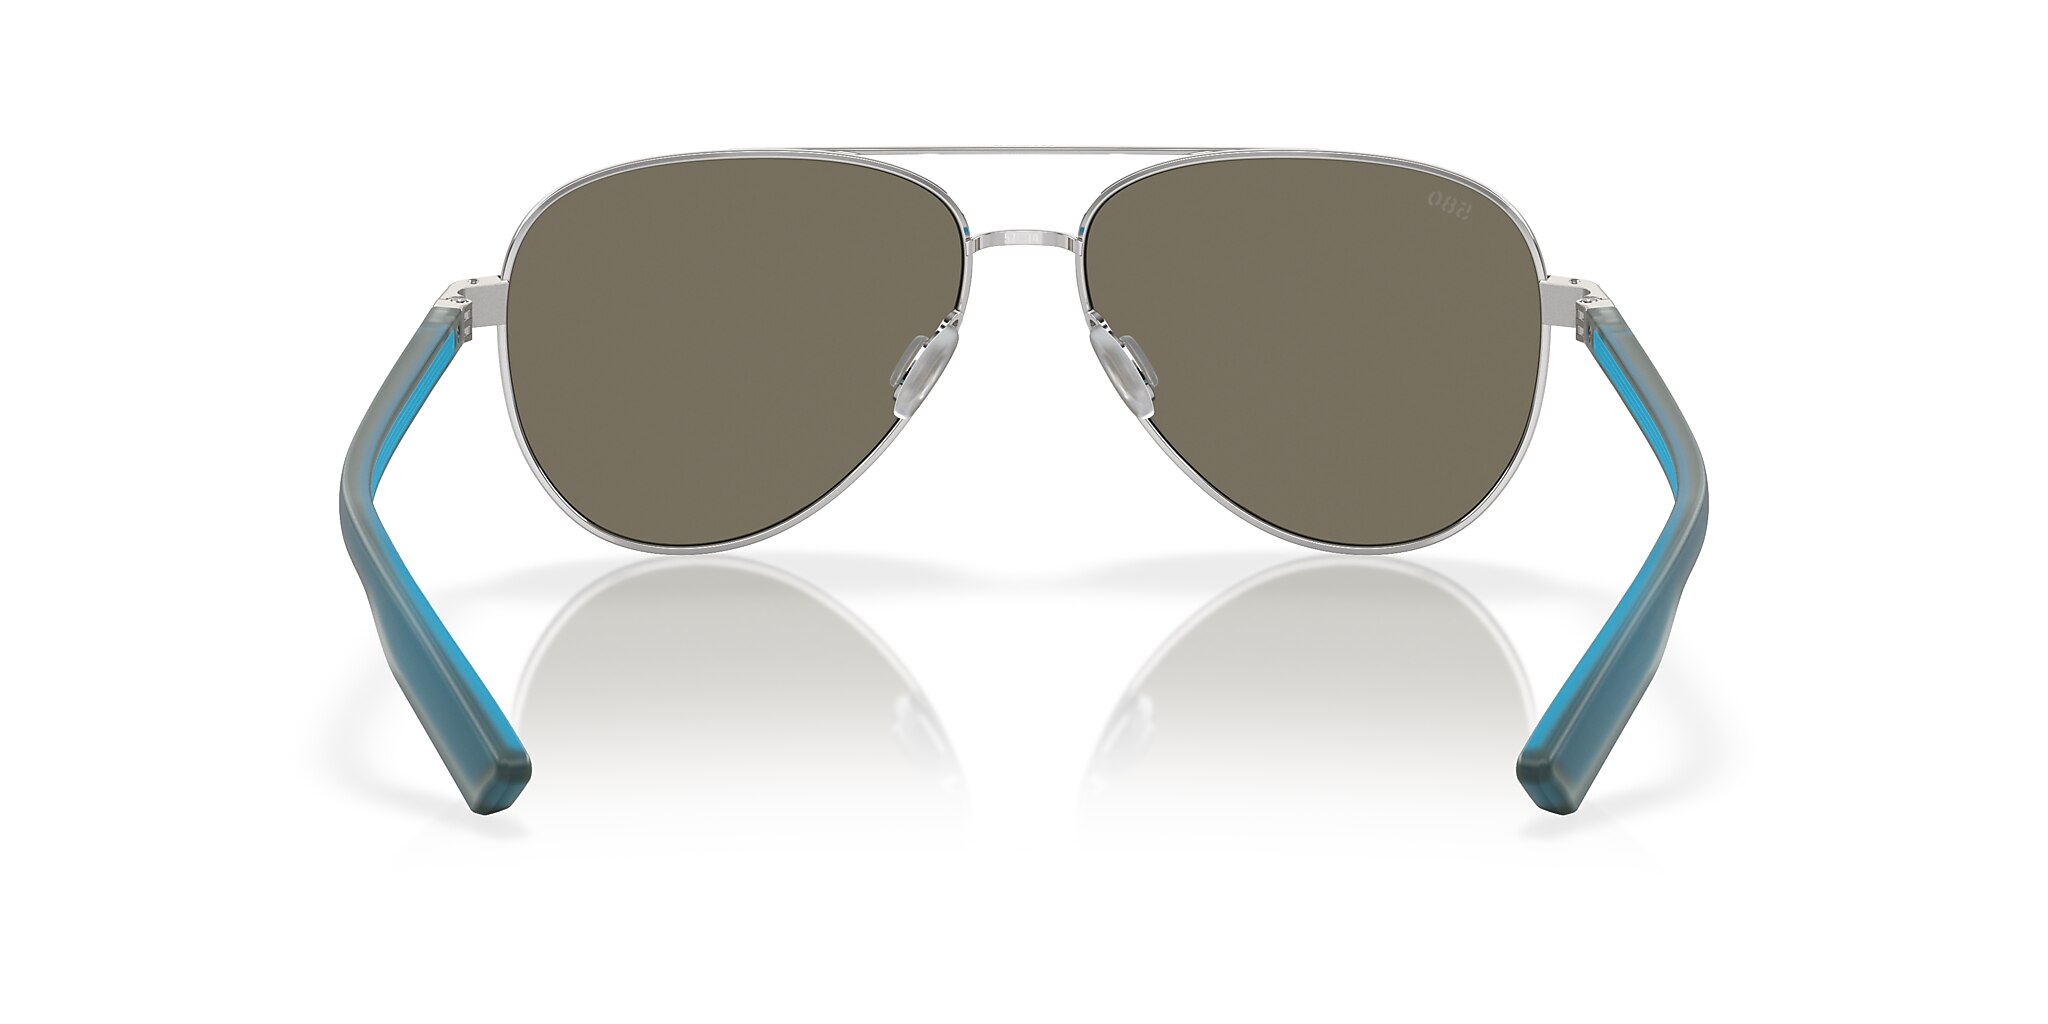 Peli Polarized Sunglasses in Blue Mirror | Costa Del Mar®